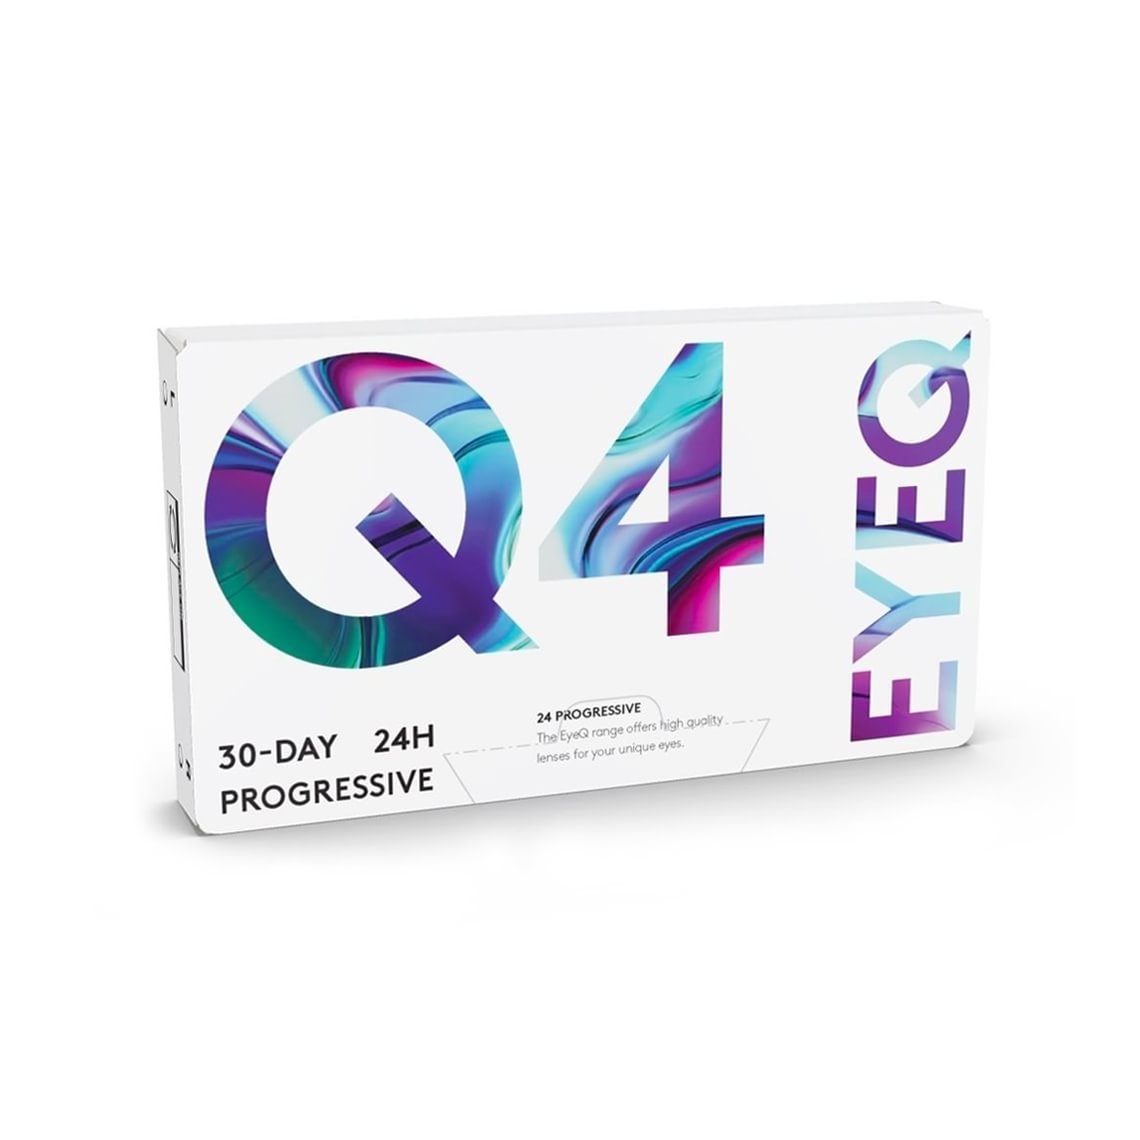 EyeQ 24 Progressive Q4